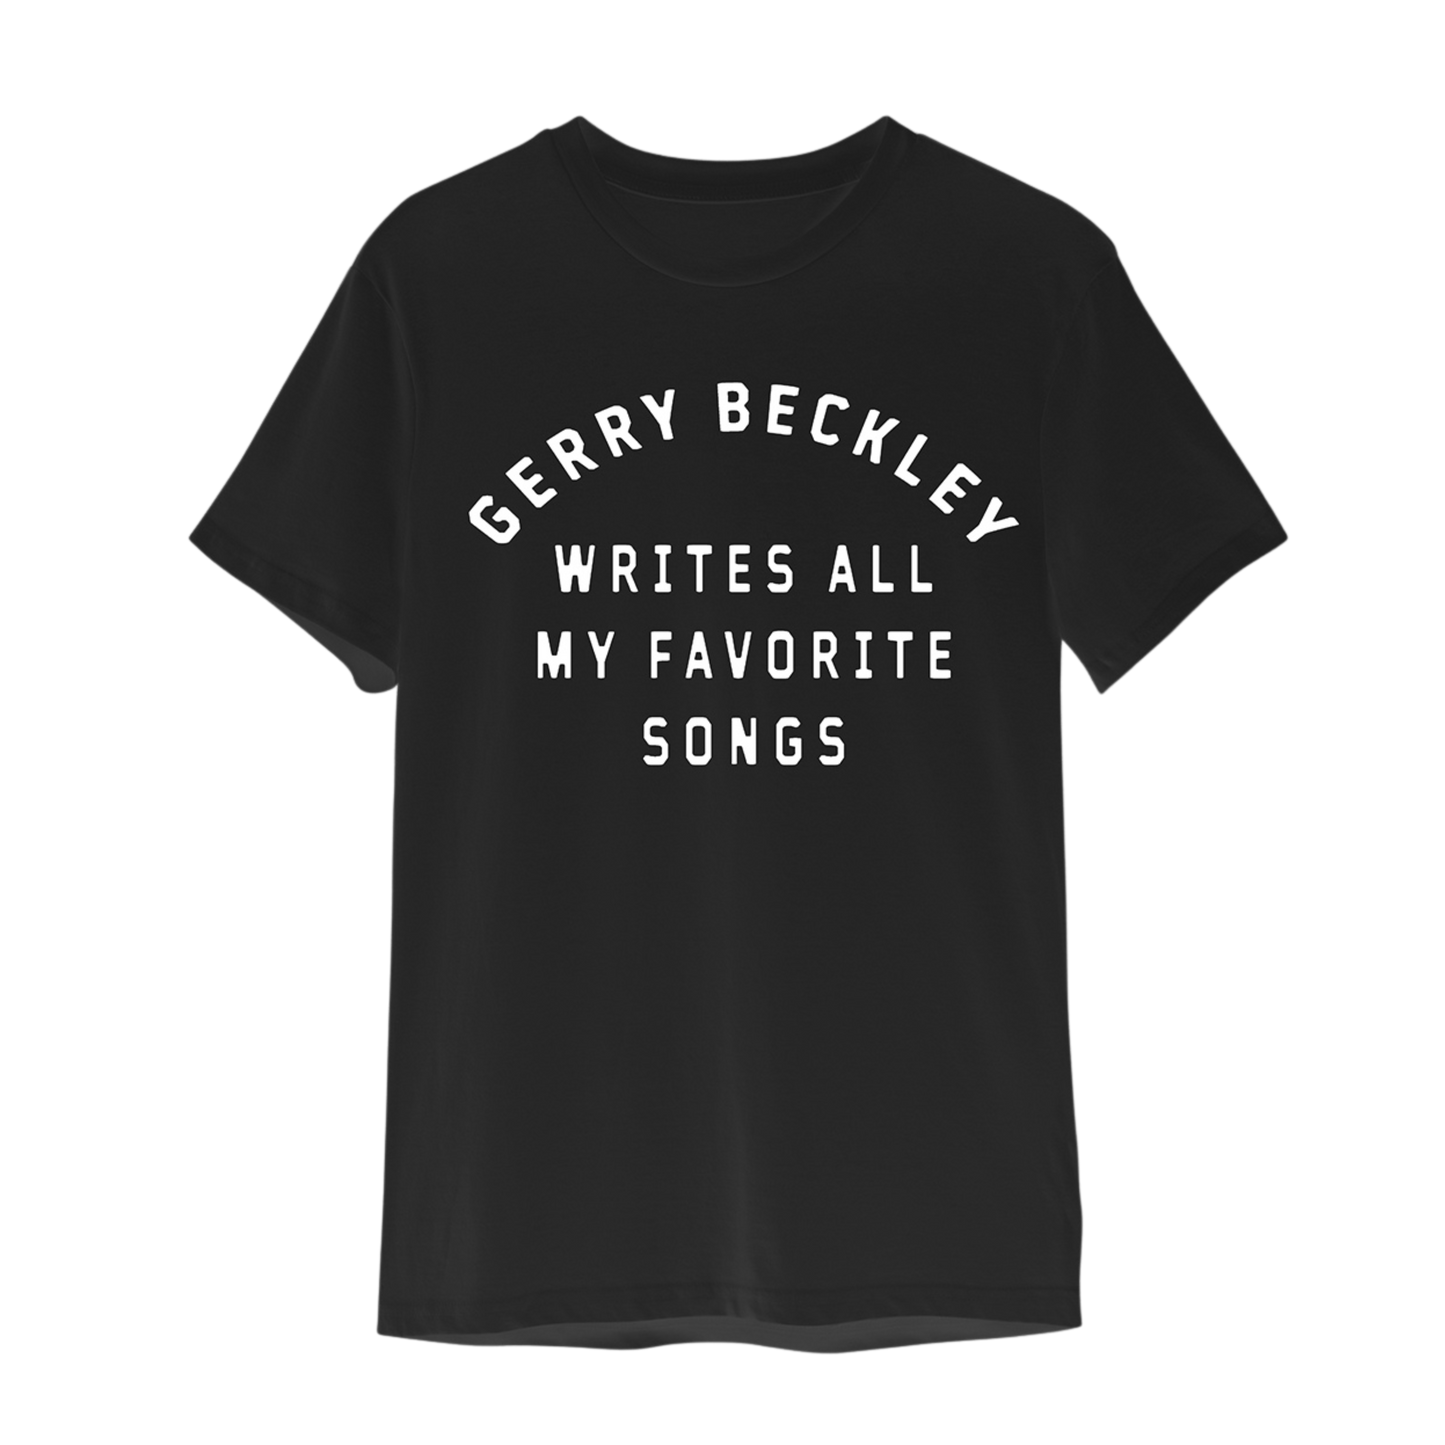 Gerry Beckley Writes all My Favorite Songs Tee (Black)